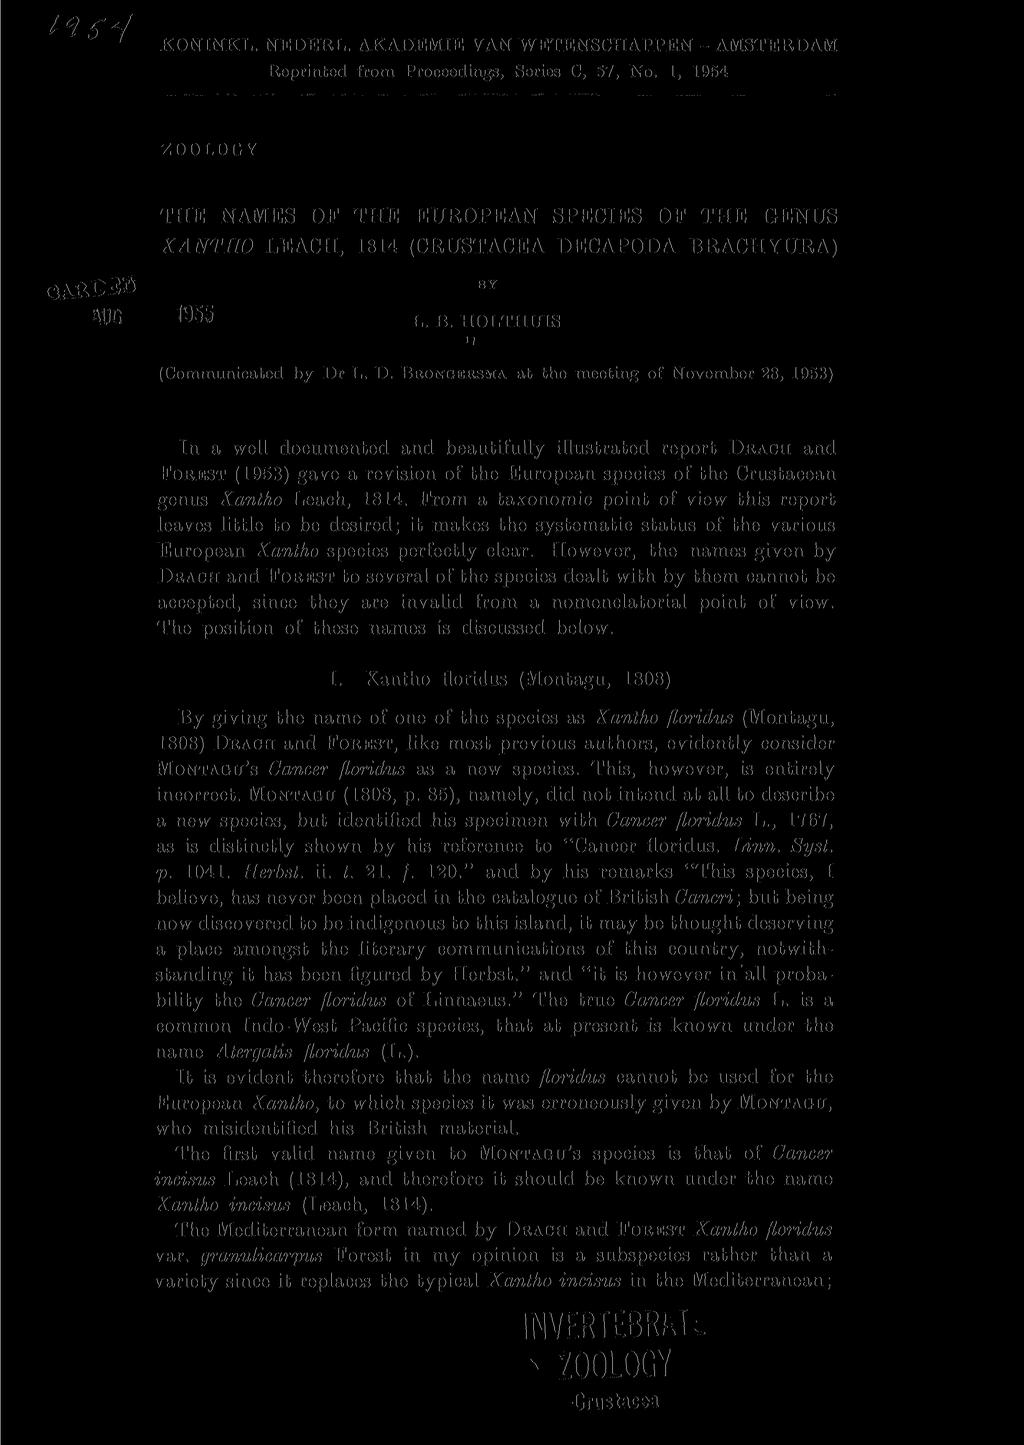 KONINKL. NEDERL. AKADEMIE VAN WETENSCHAPPEN - AMSTERDAM Reprinted from Proceedings, Series C, 57, No.